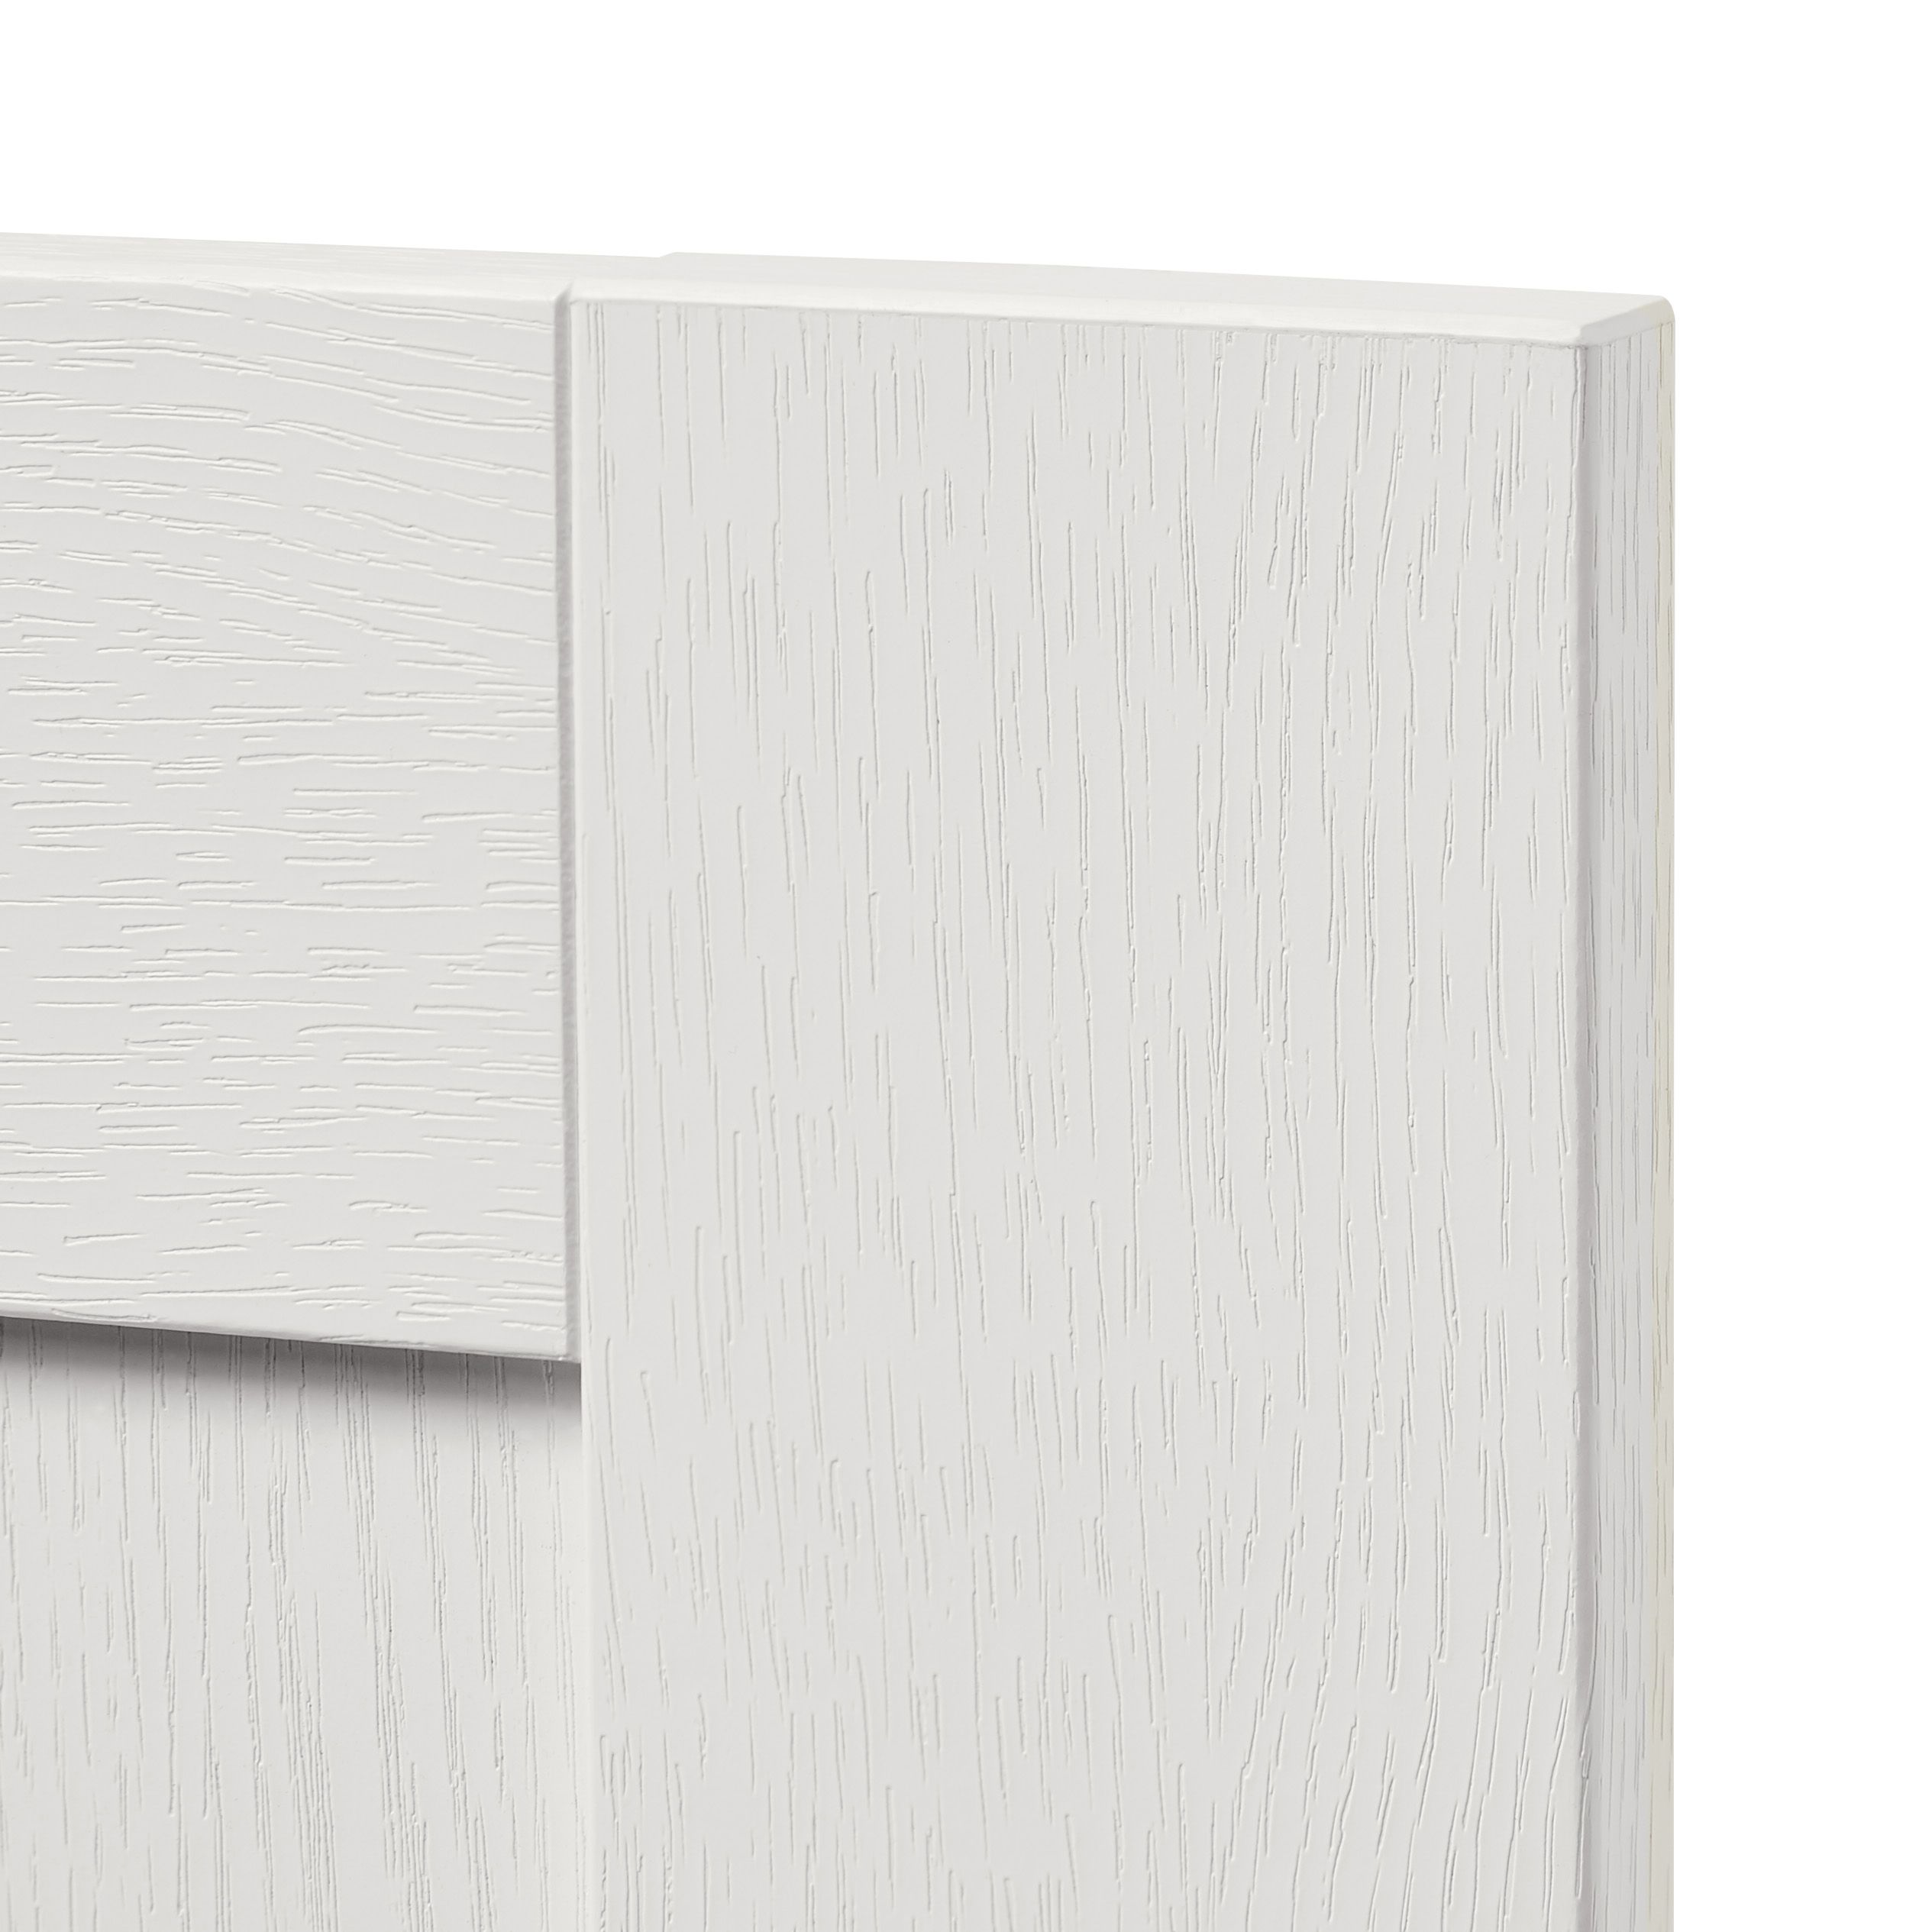 GoodHome Alpinia Matt ivory wood effect Drawer front, bridging door & bi fold door, (W)500mm (H)356mm (T)18mm